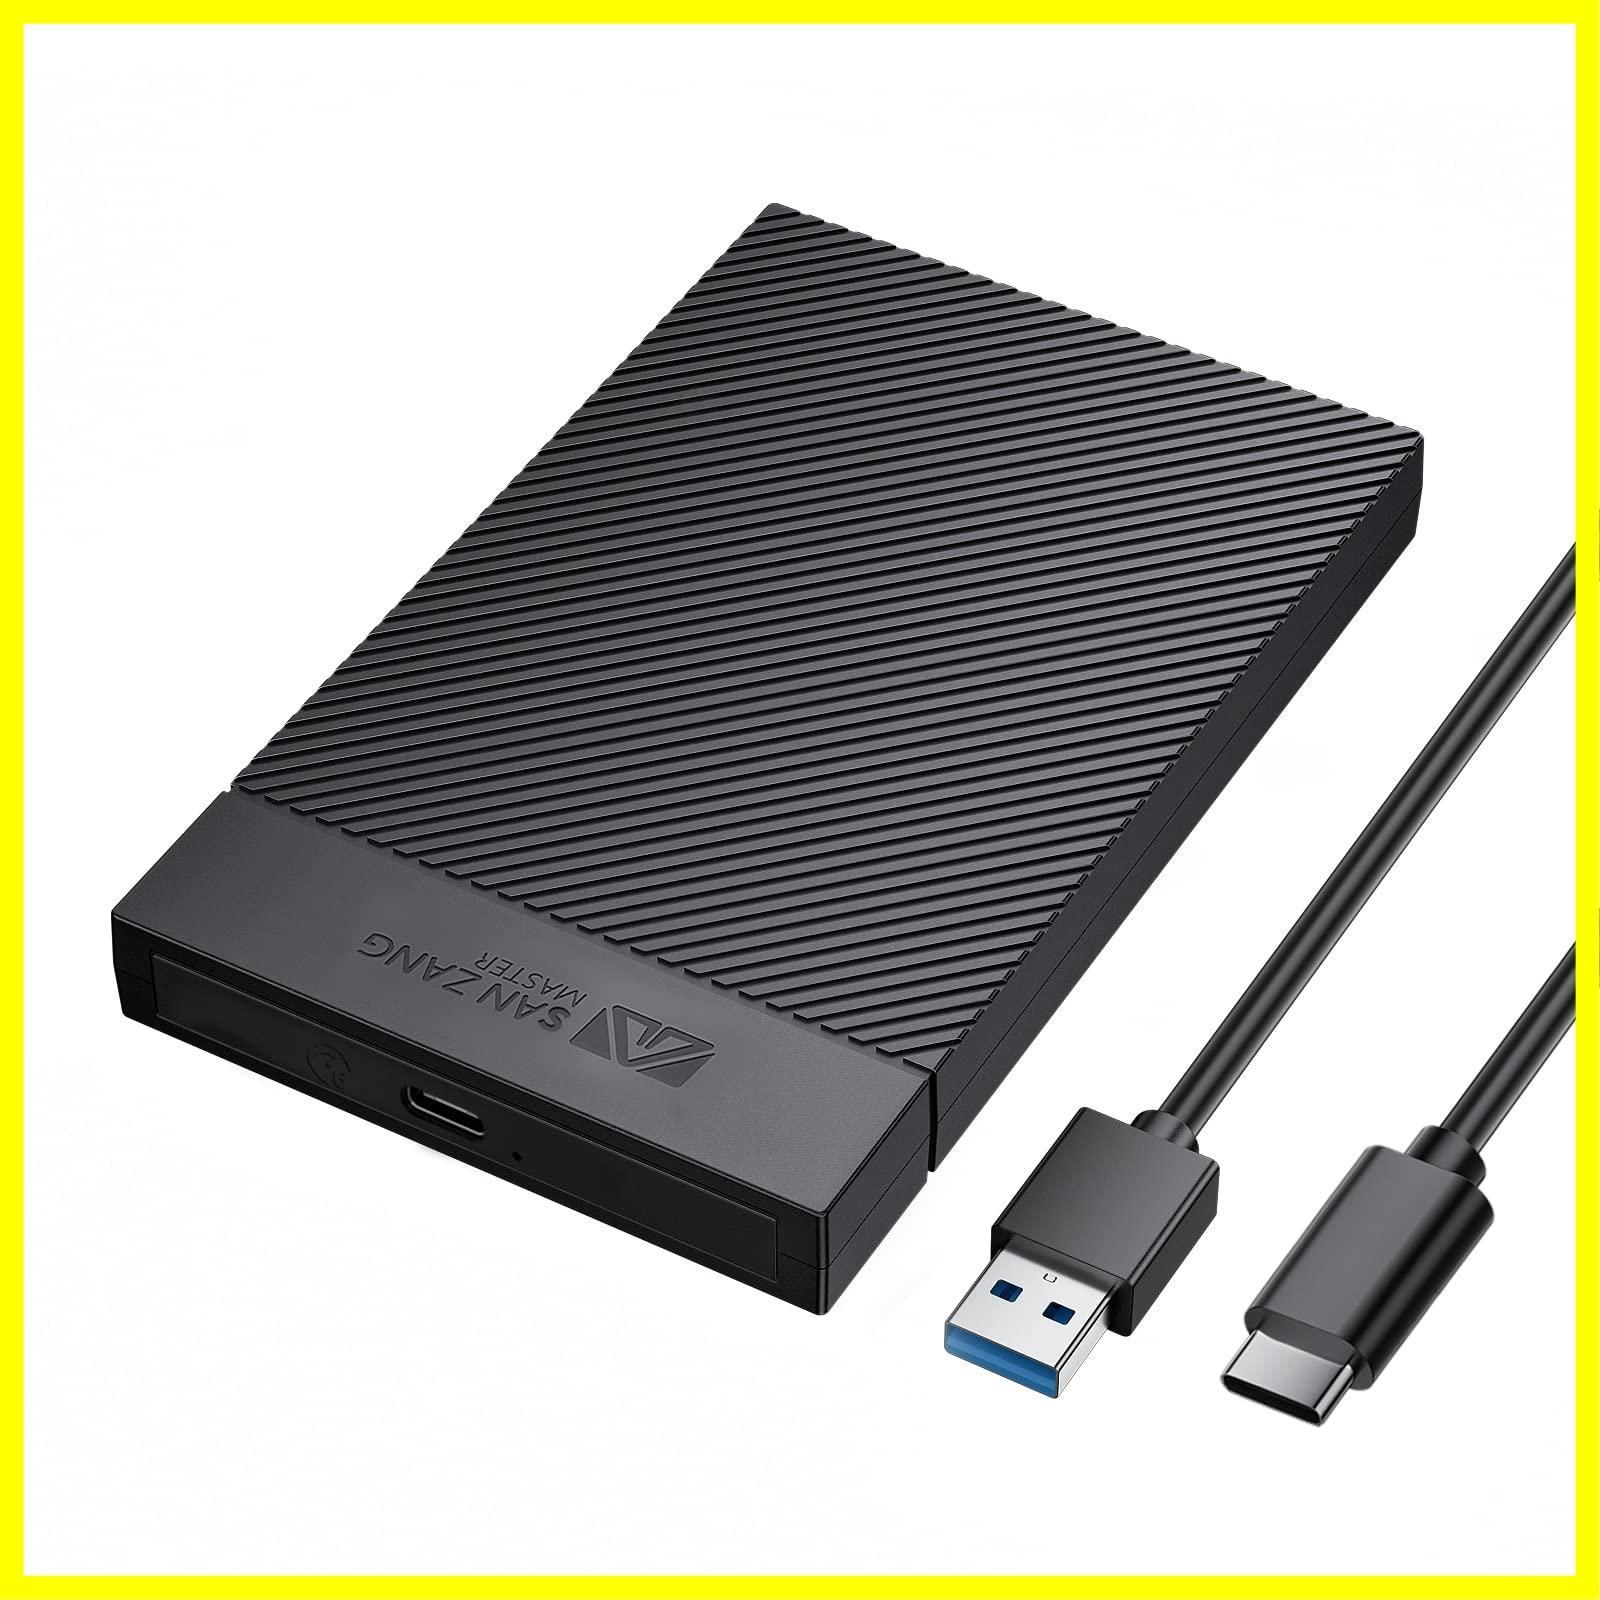 HDD ケース USB3.0 外付け SSD 2.5インチ HDDケース データ転送 高速